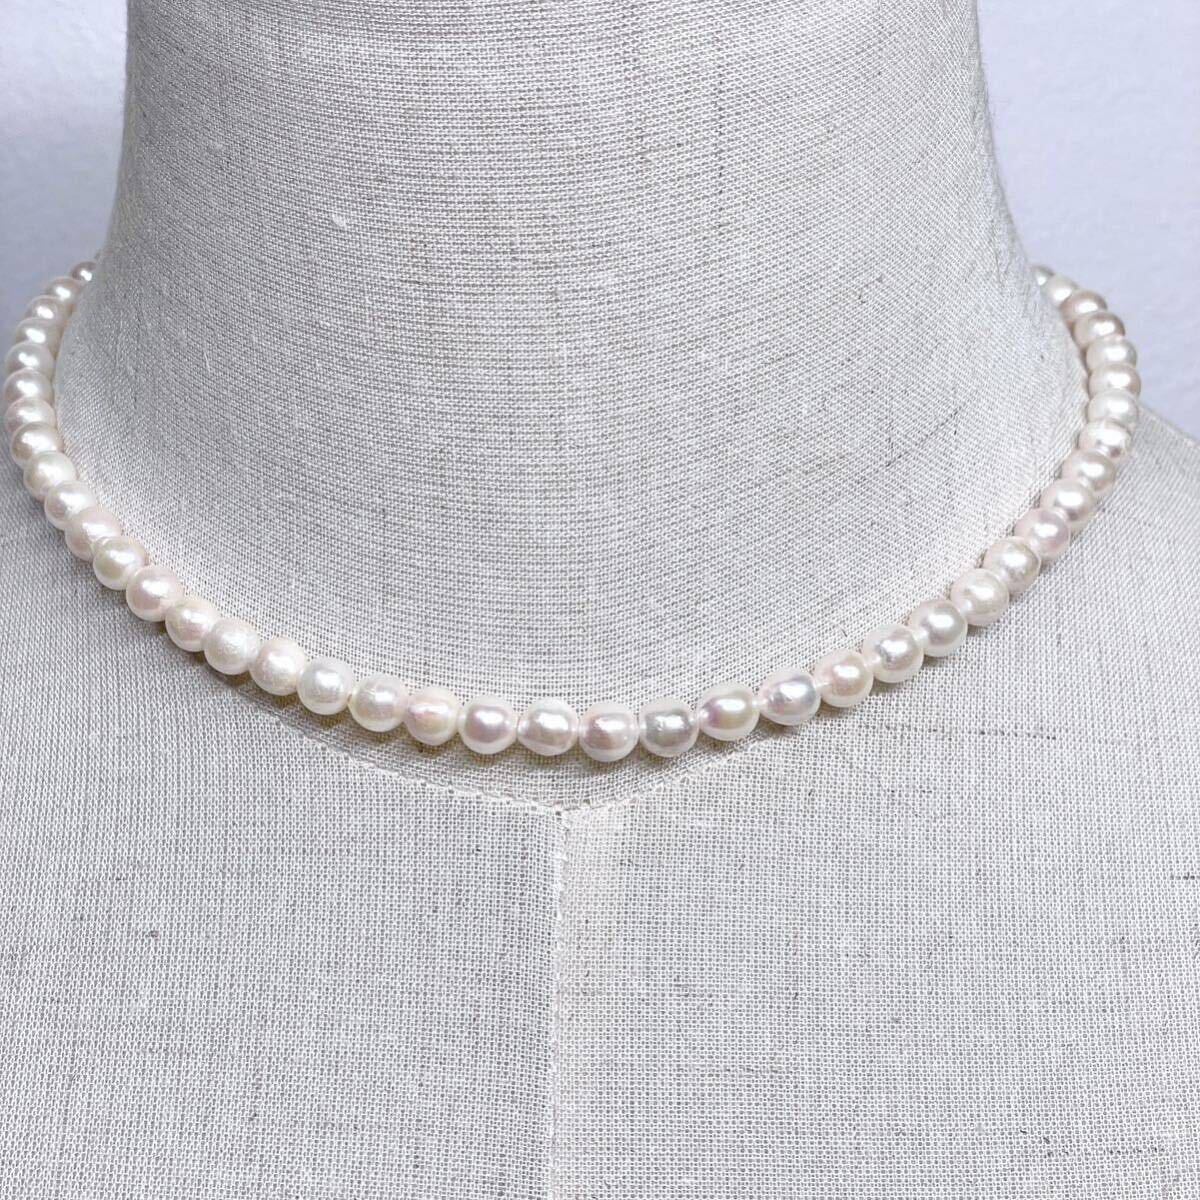 テリ良 本真珠 ネックレス 約40cm 6.0-6.3mm アコヤパール ラウンド pearl necklace jewelry silverの画像1